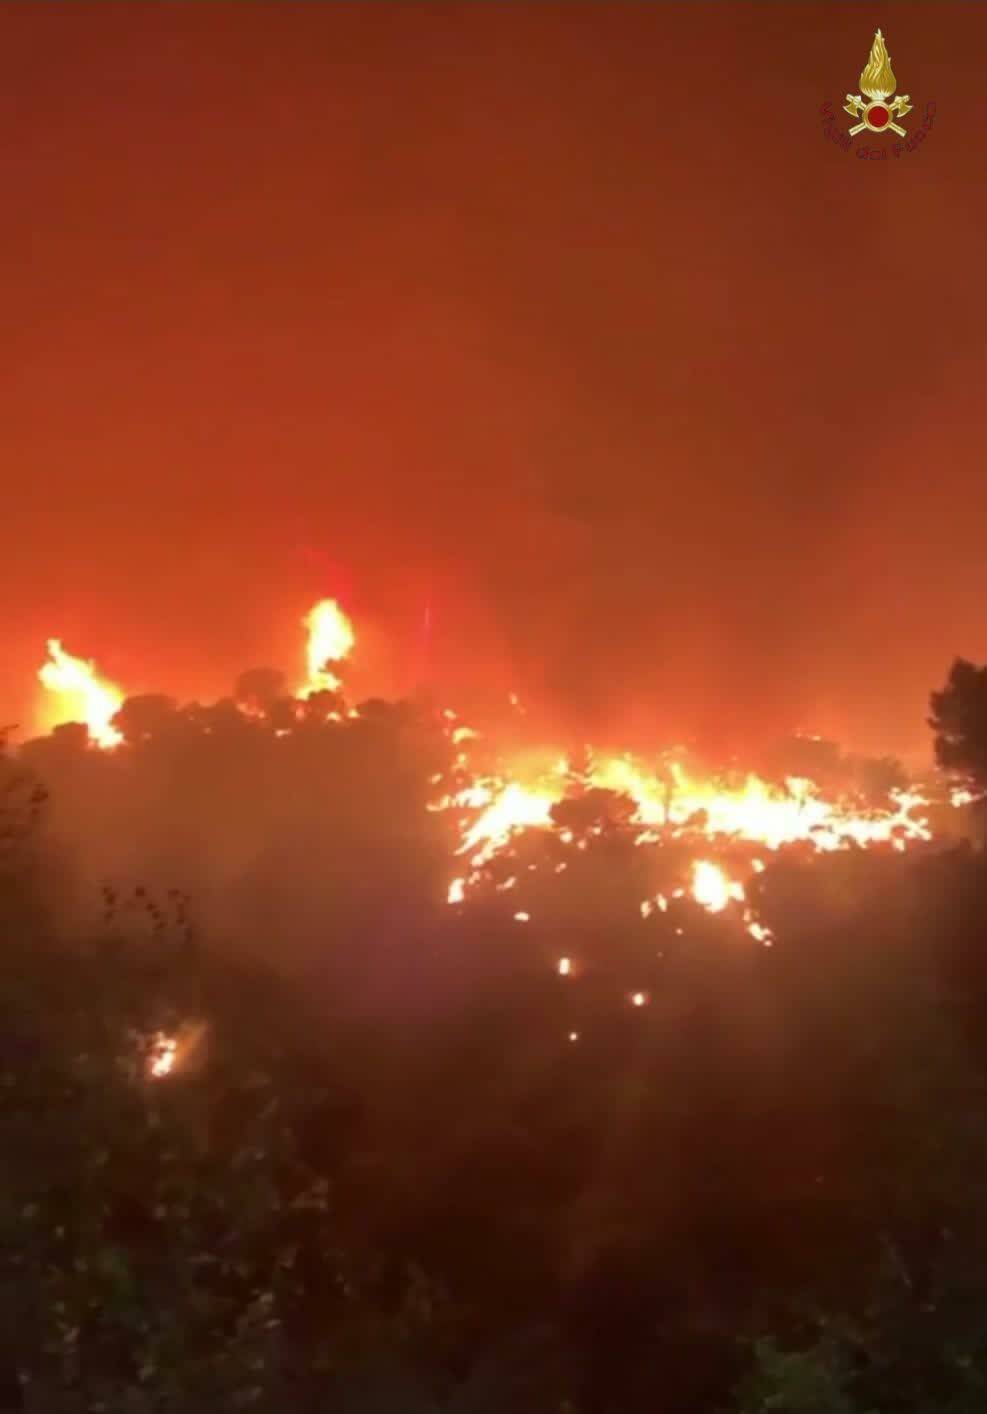 Gli incendi boschivi hanno conseguenze anche sul mare e i suoi abitanti: lo studio